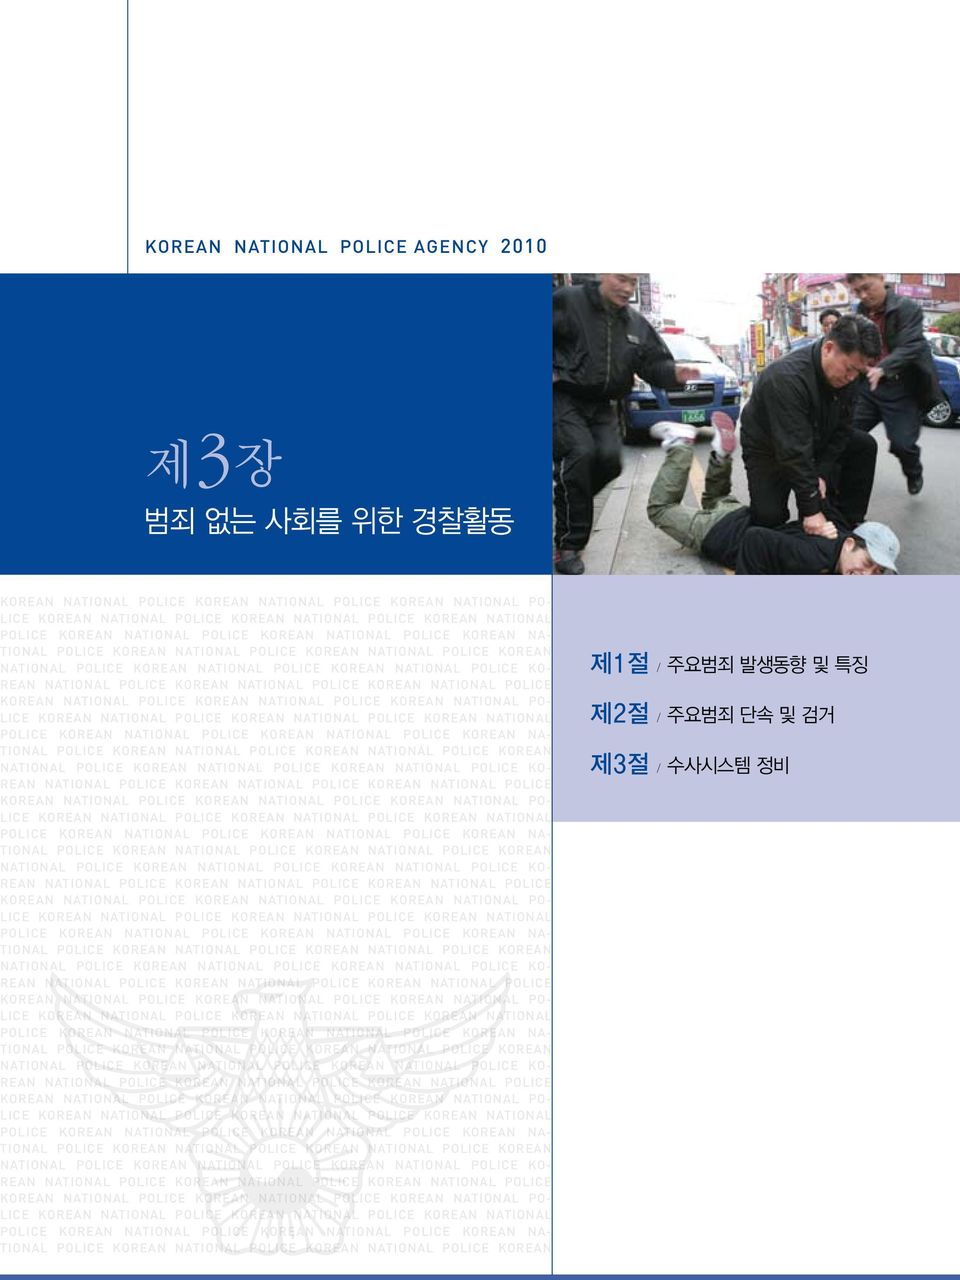 KOREAN NATIONAL POLICE KOREAN NATIONAL POLICE KOREAN NATIONAL POLICE KOREAN NATIONAL POLICE KOREAN NATIONAL PO- LICE KOREAN NATIONAL POLICE KOREAN NATIONAL POLICE KOREAN NATIONAL POLICE KOREAN